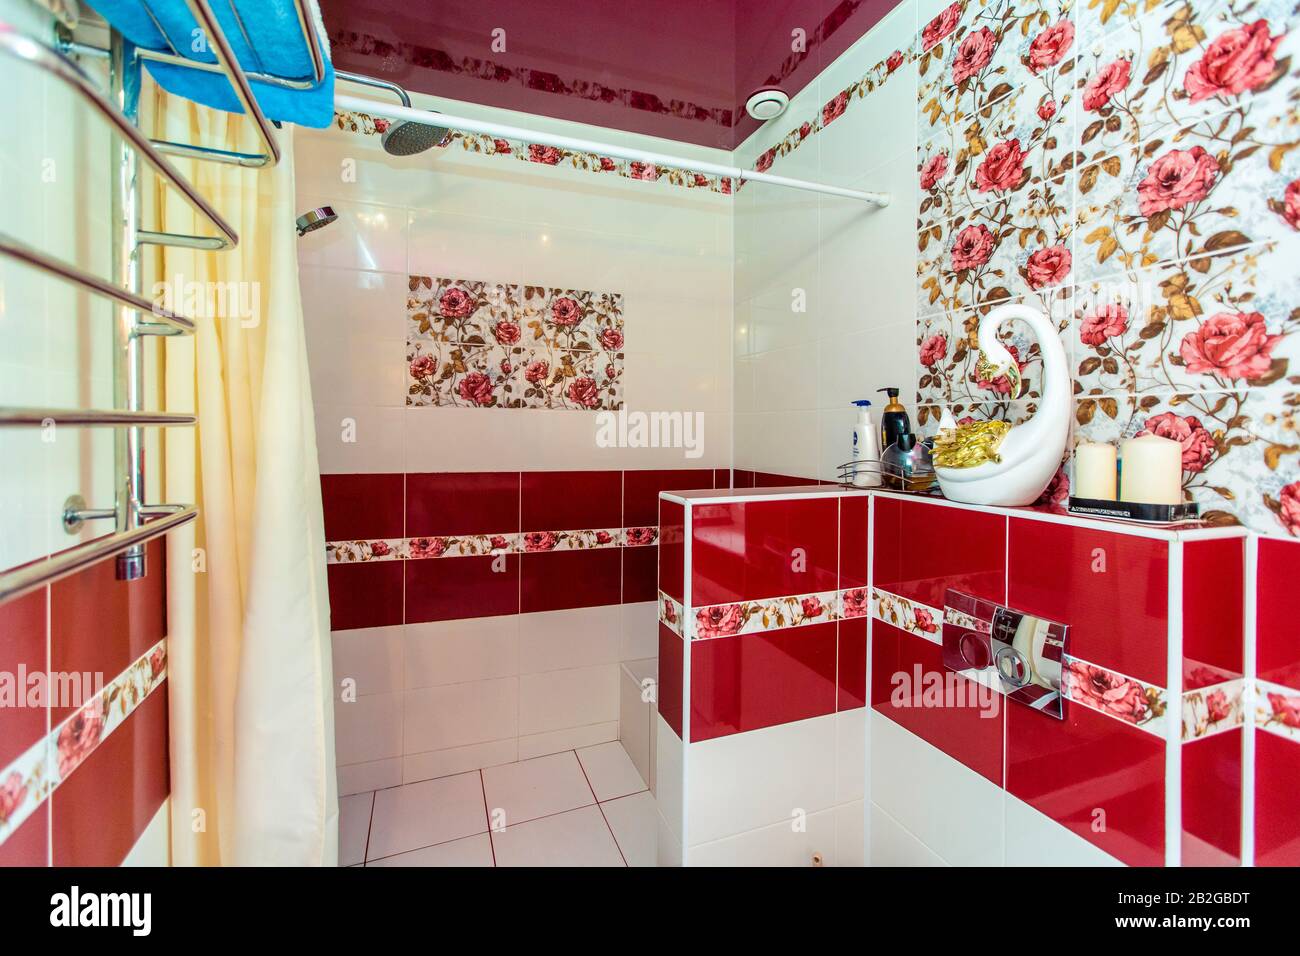 Großes Badezimmer im Cottage in rot-weißen Farben. Kastanienbraune und weiße Fliesen, Fliesen mit roten Farben. Toilette, Dusche. Weiße und kastanienbraune Fliesen auf dem fl Stockfoto